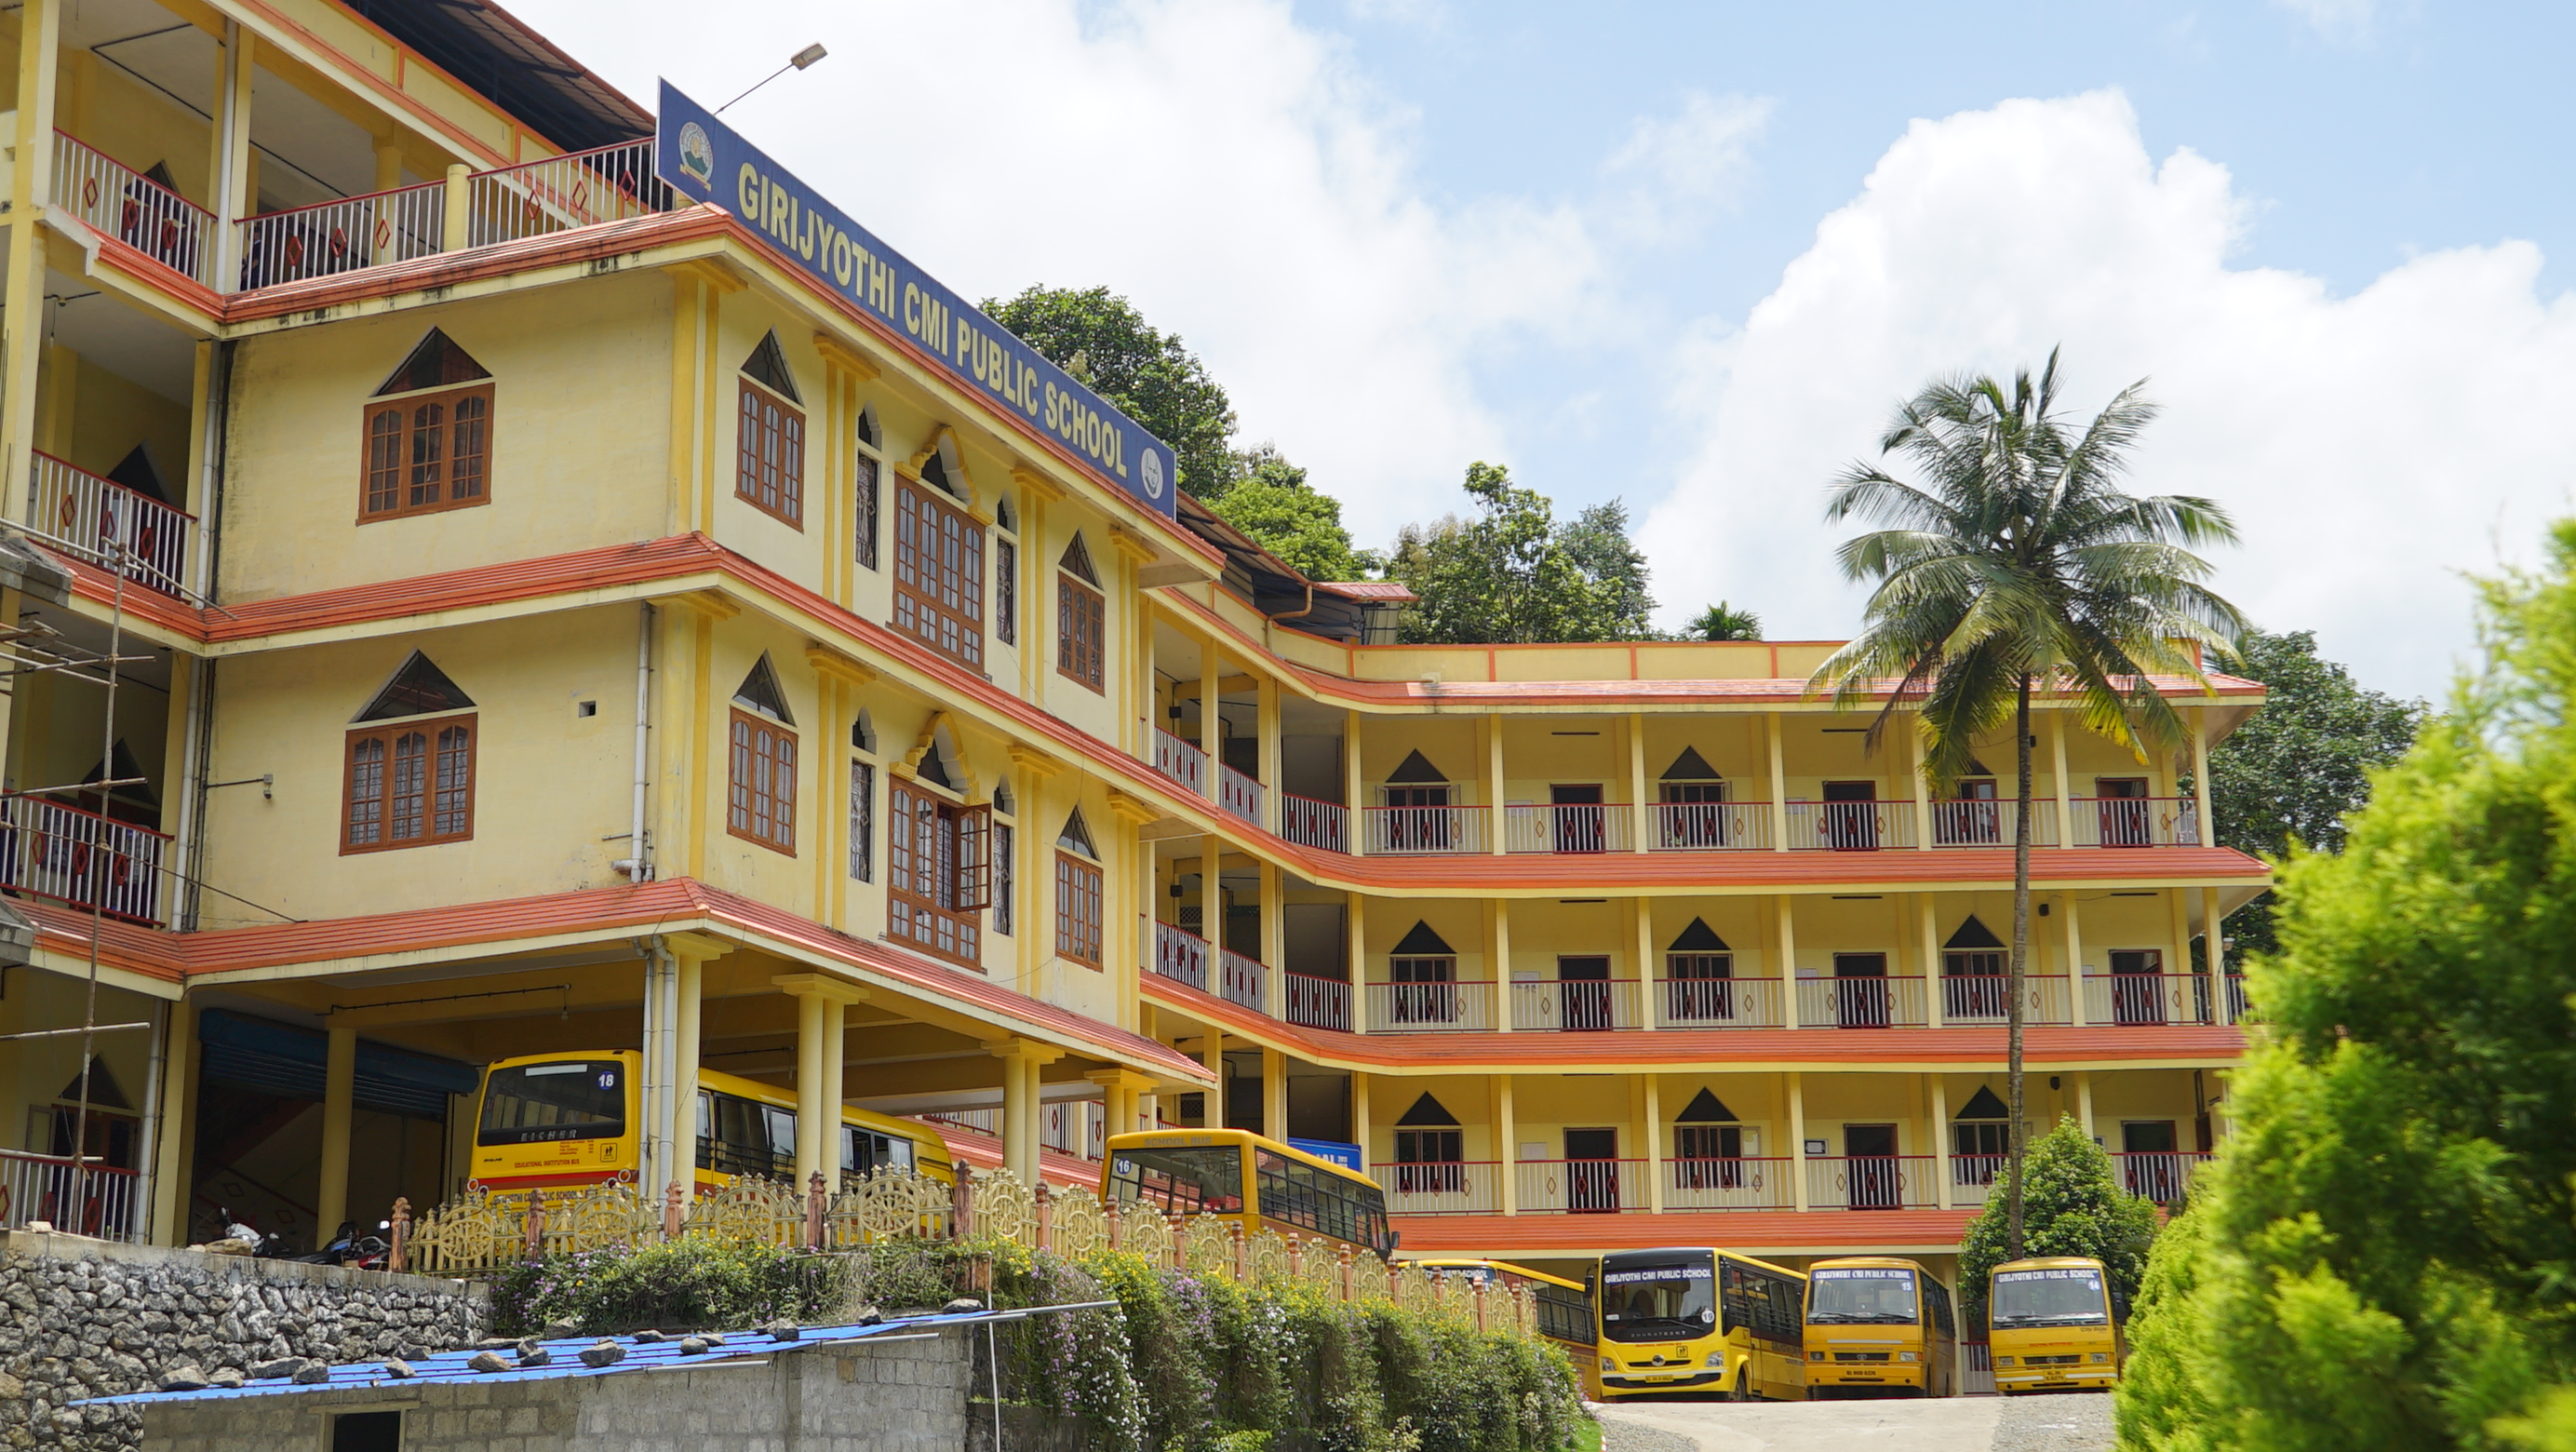 Girijyothi CMI Public School